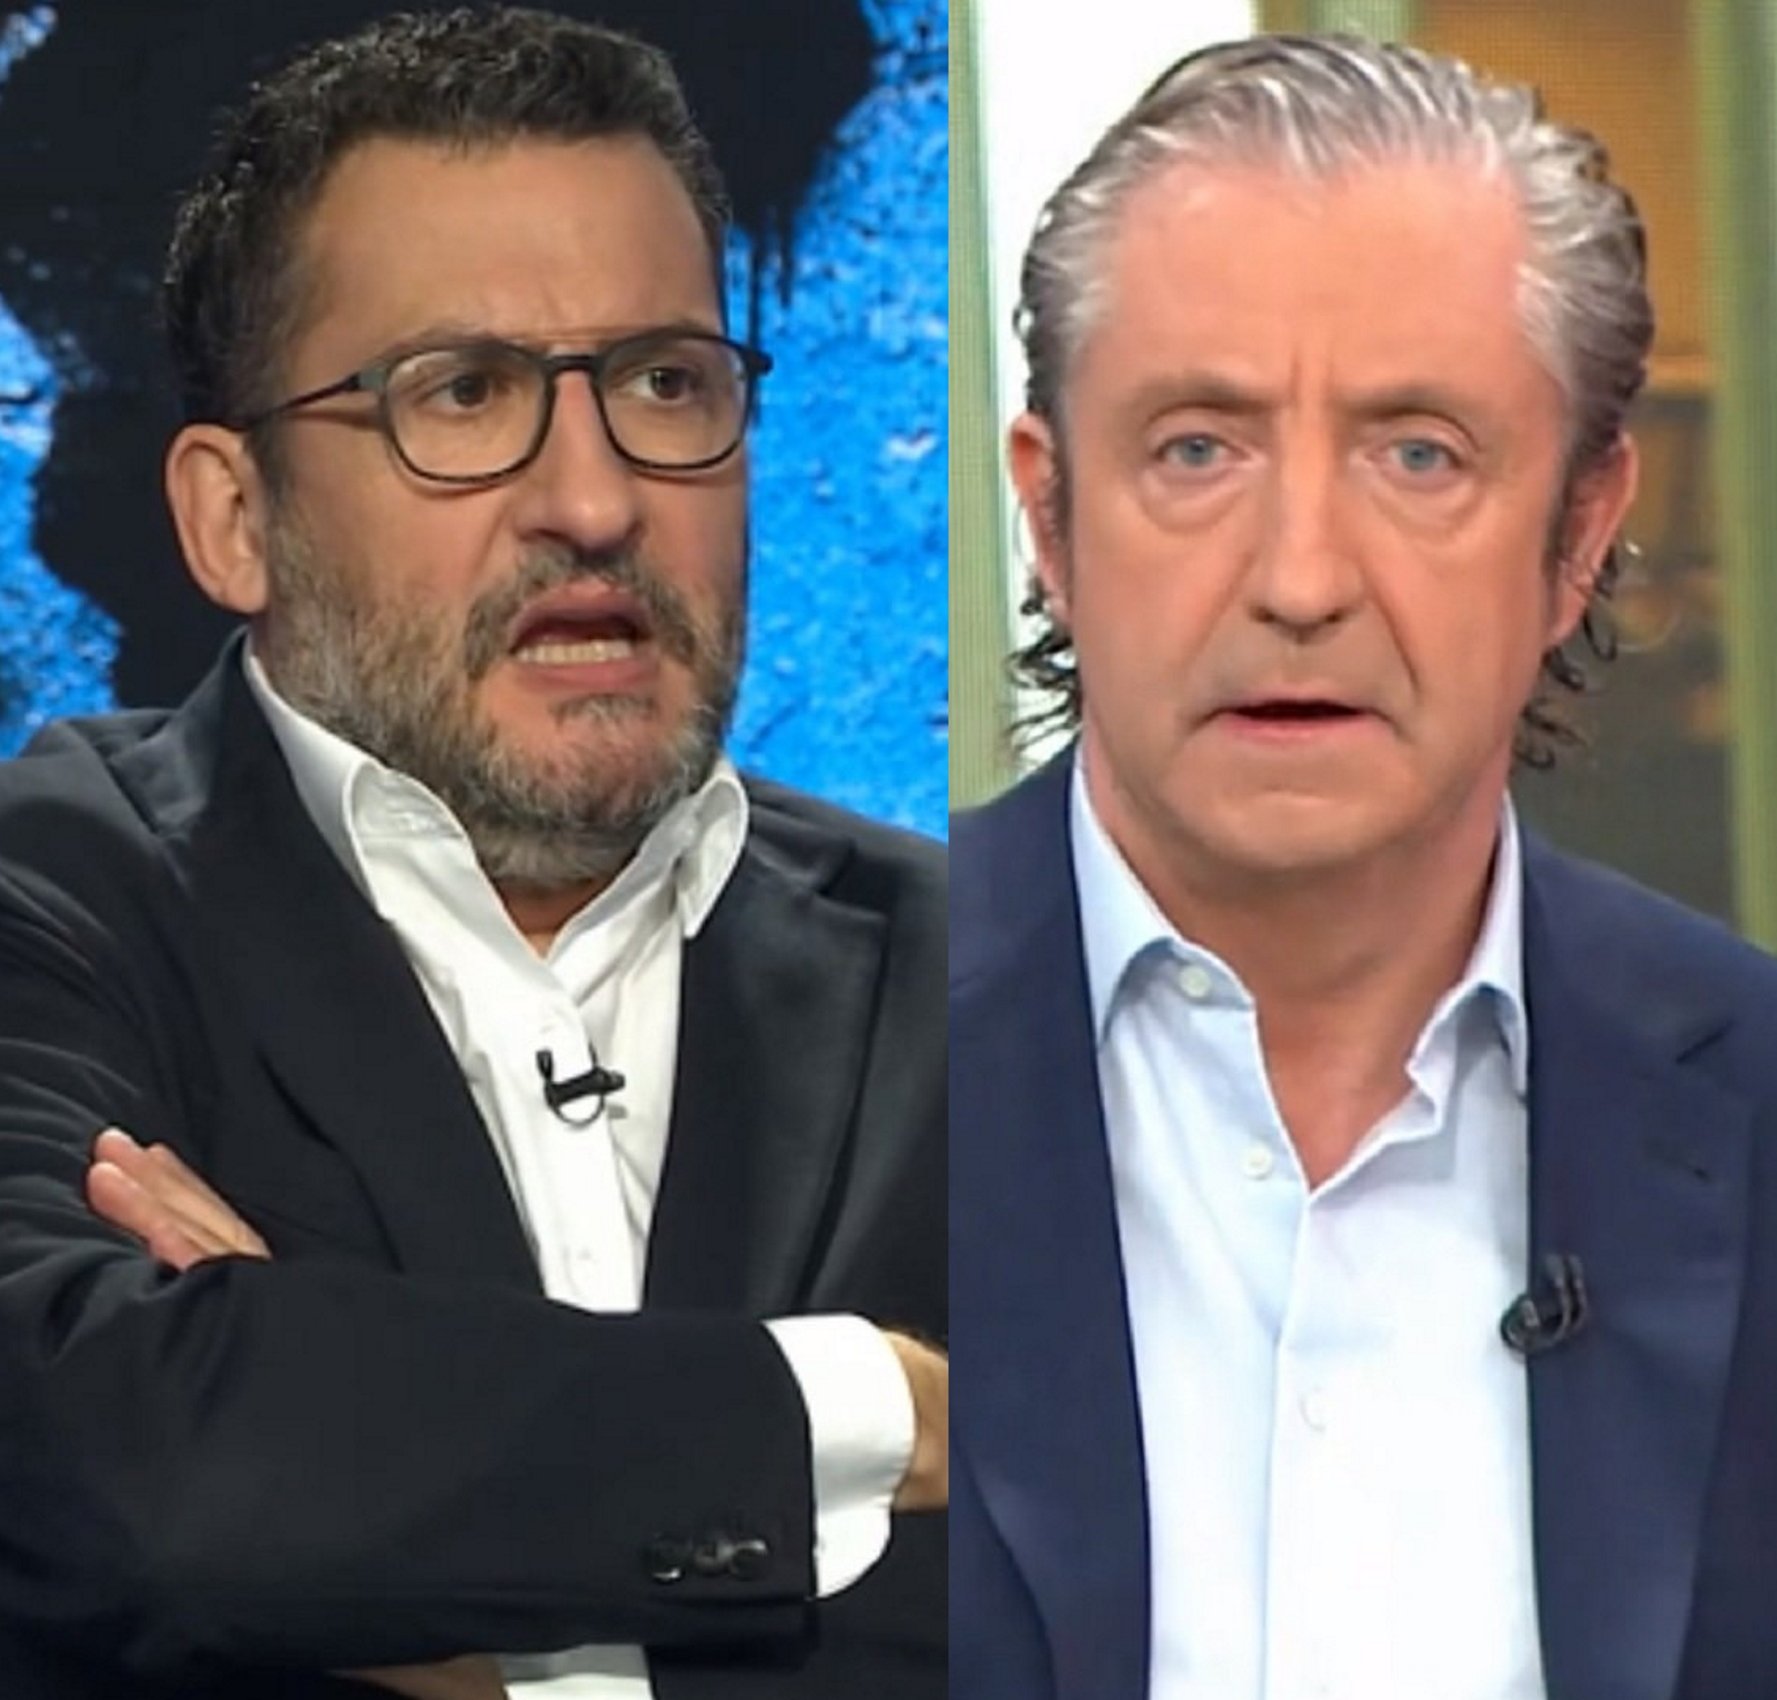 Colleja de Toni Soler a Josep Pedrerol por su debut anti-indepe en La Vanguardia